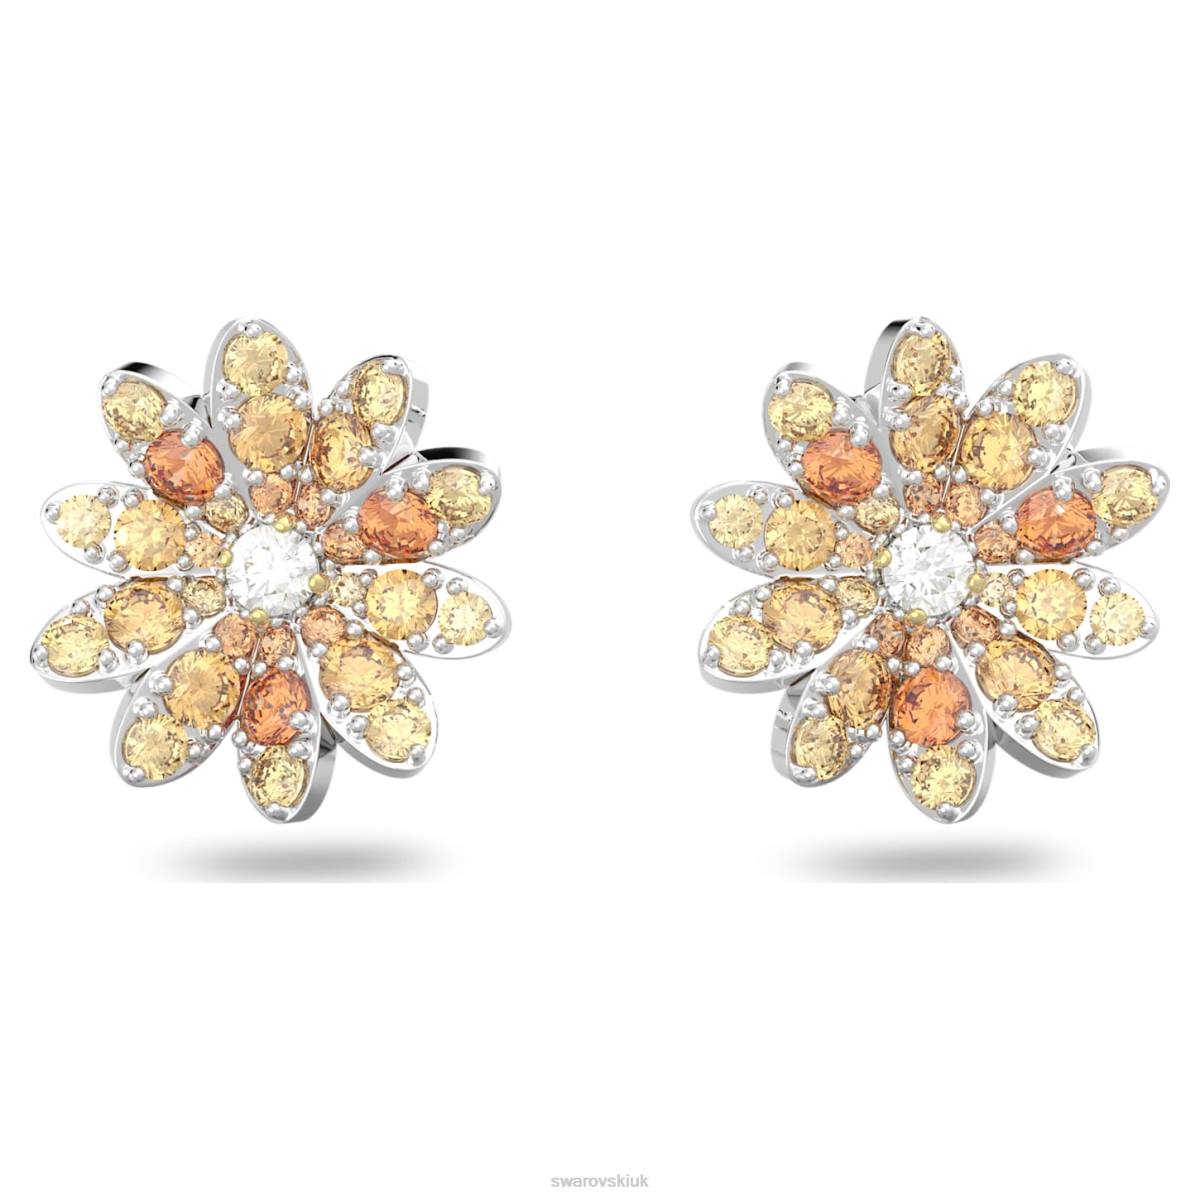 Jewelry Swarovski Eternal Flower stud earrings Flower, Multicolored, Mixed metal finish 48JX721